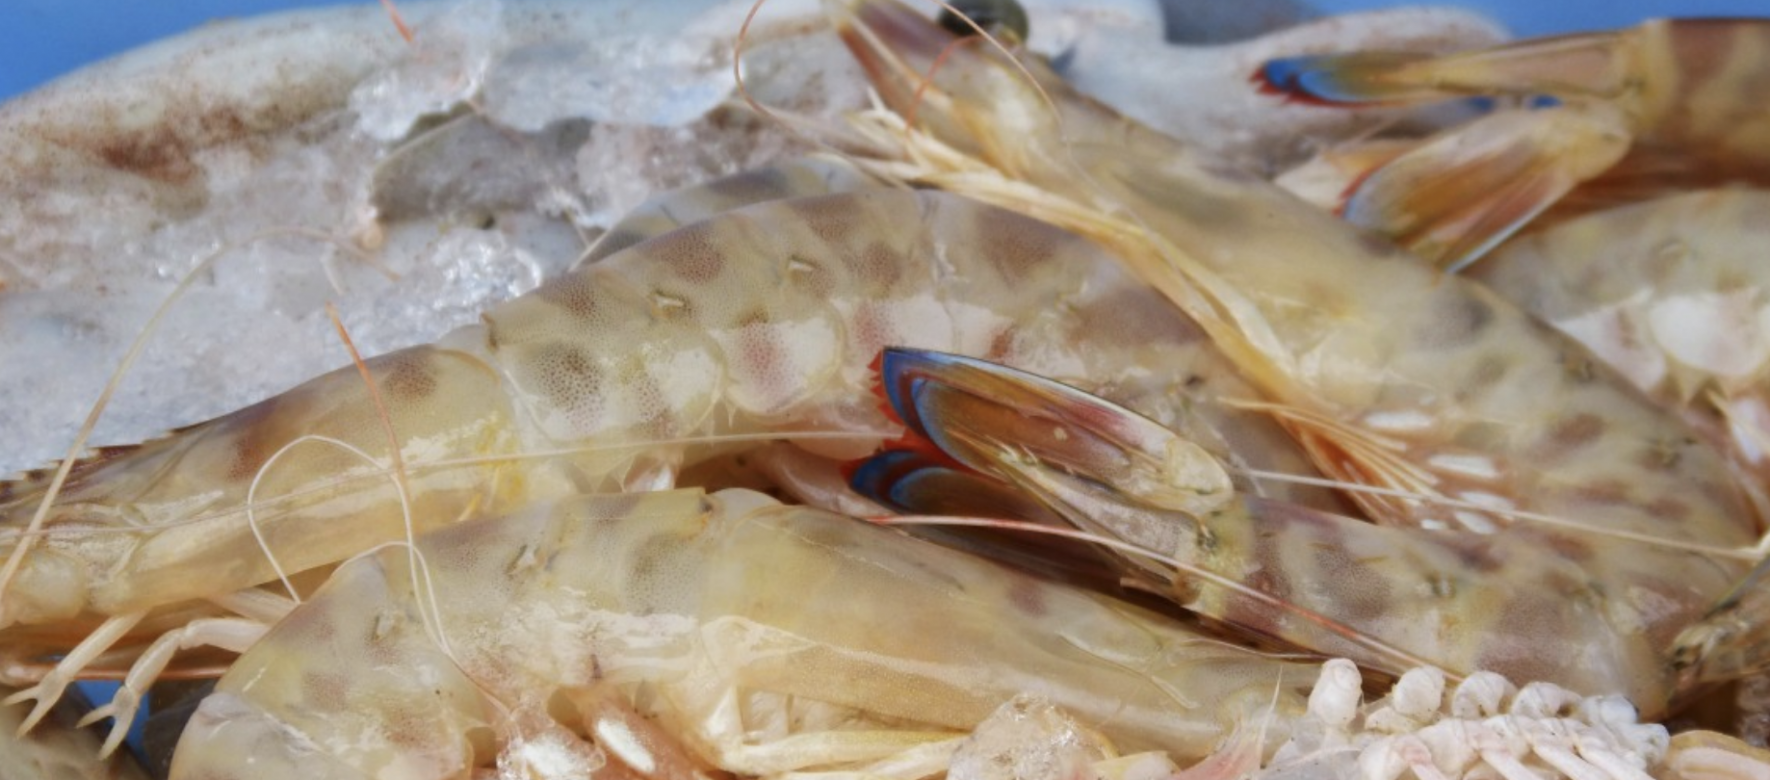 Maroc : Deux nouvelles usines de transformation de crevettes vont être installées dans le nord pour 40 millions d’€